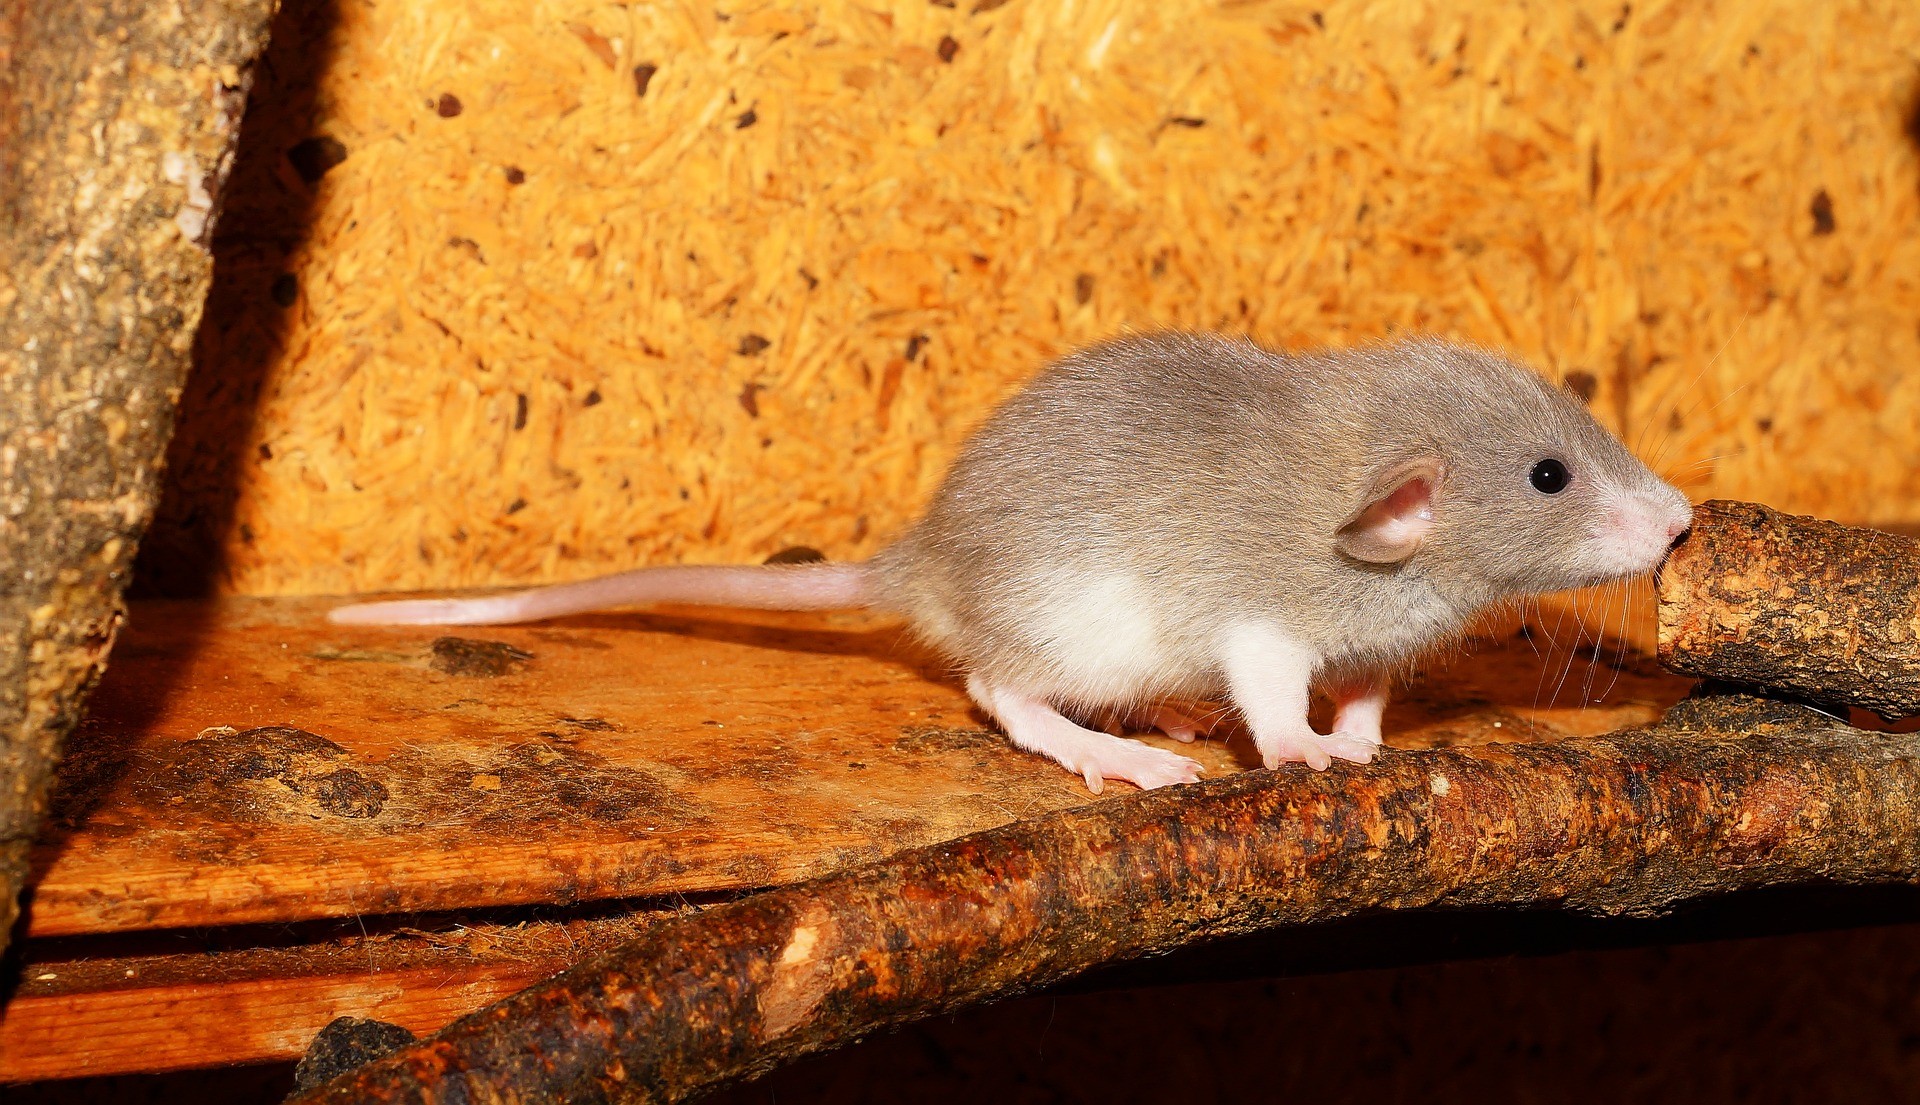 Ratos voltaram a andar e recuperaram sensibilidade (Foto: Pixabay)